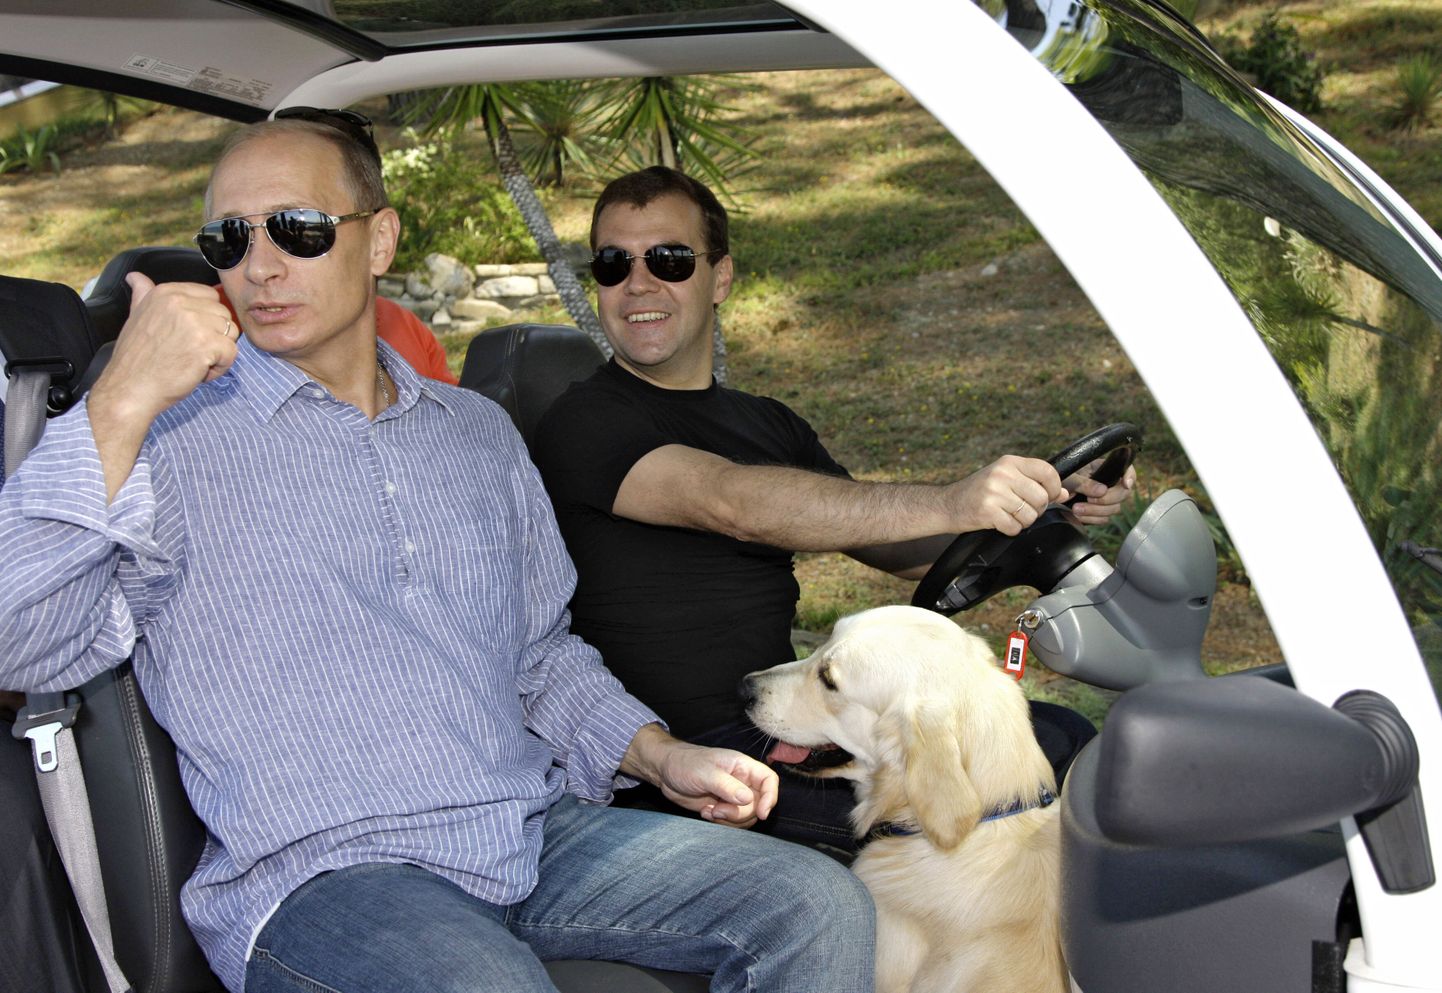 Venemaa president Vladimir Putin ja peaminister Dmitri Medvedev.  Nende juures on Medvedevi koer